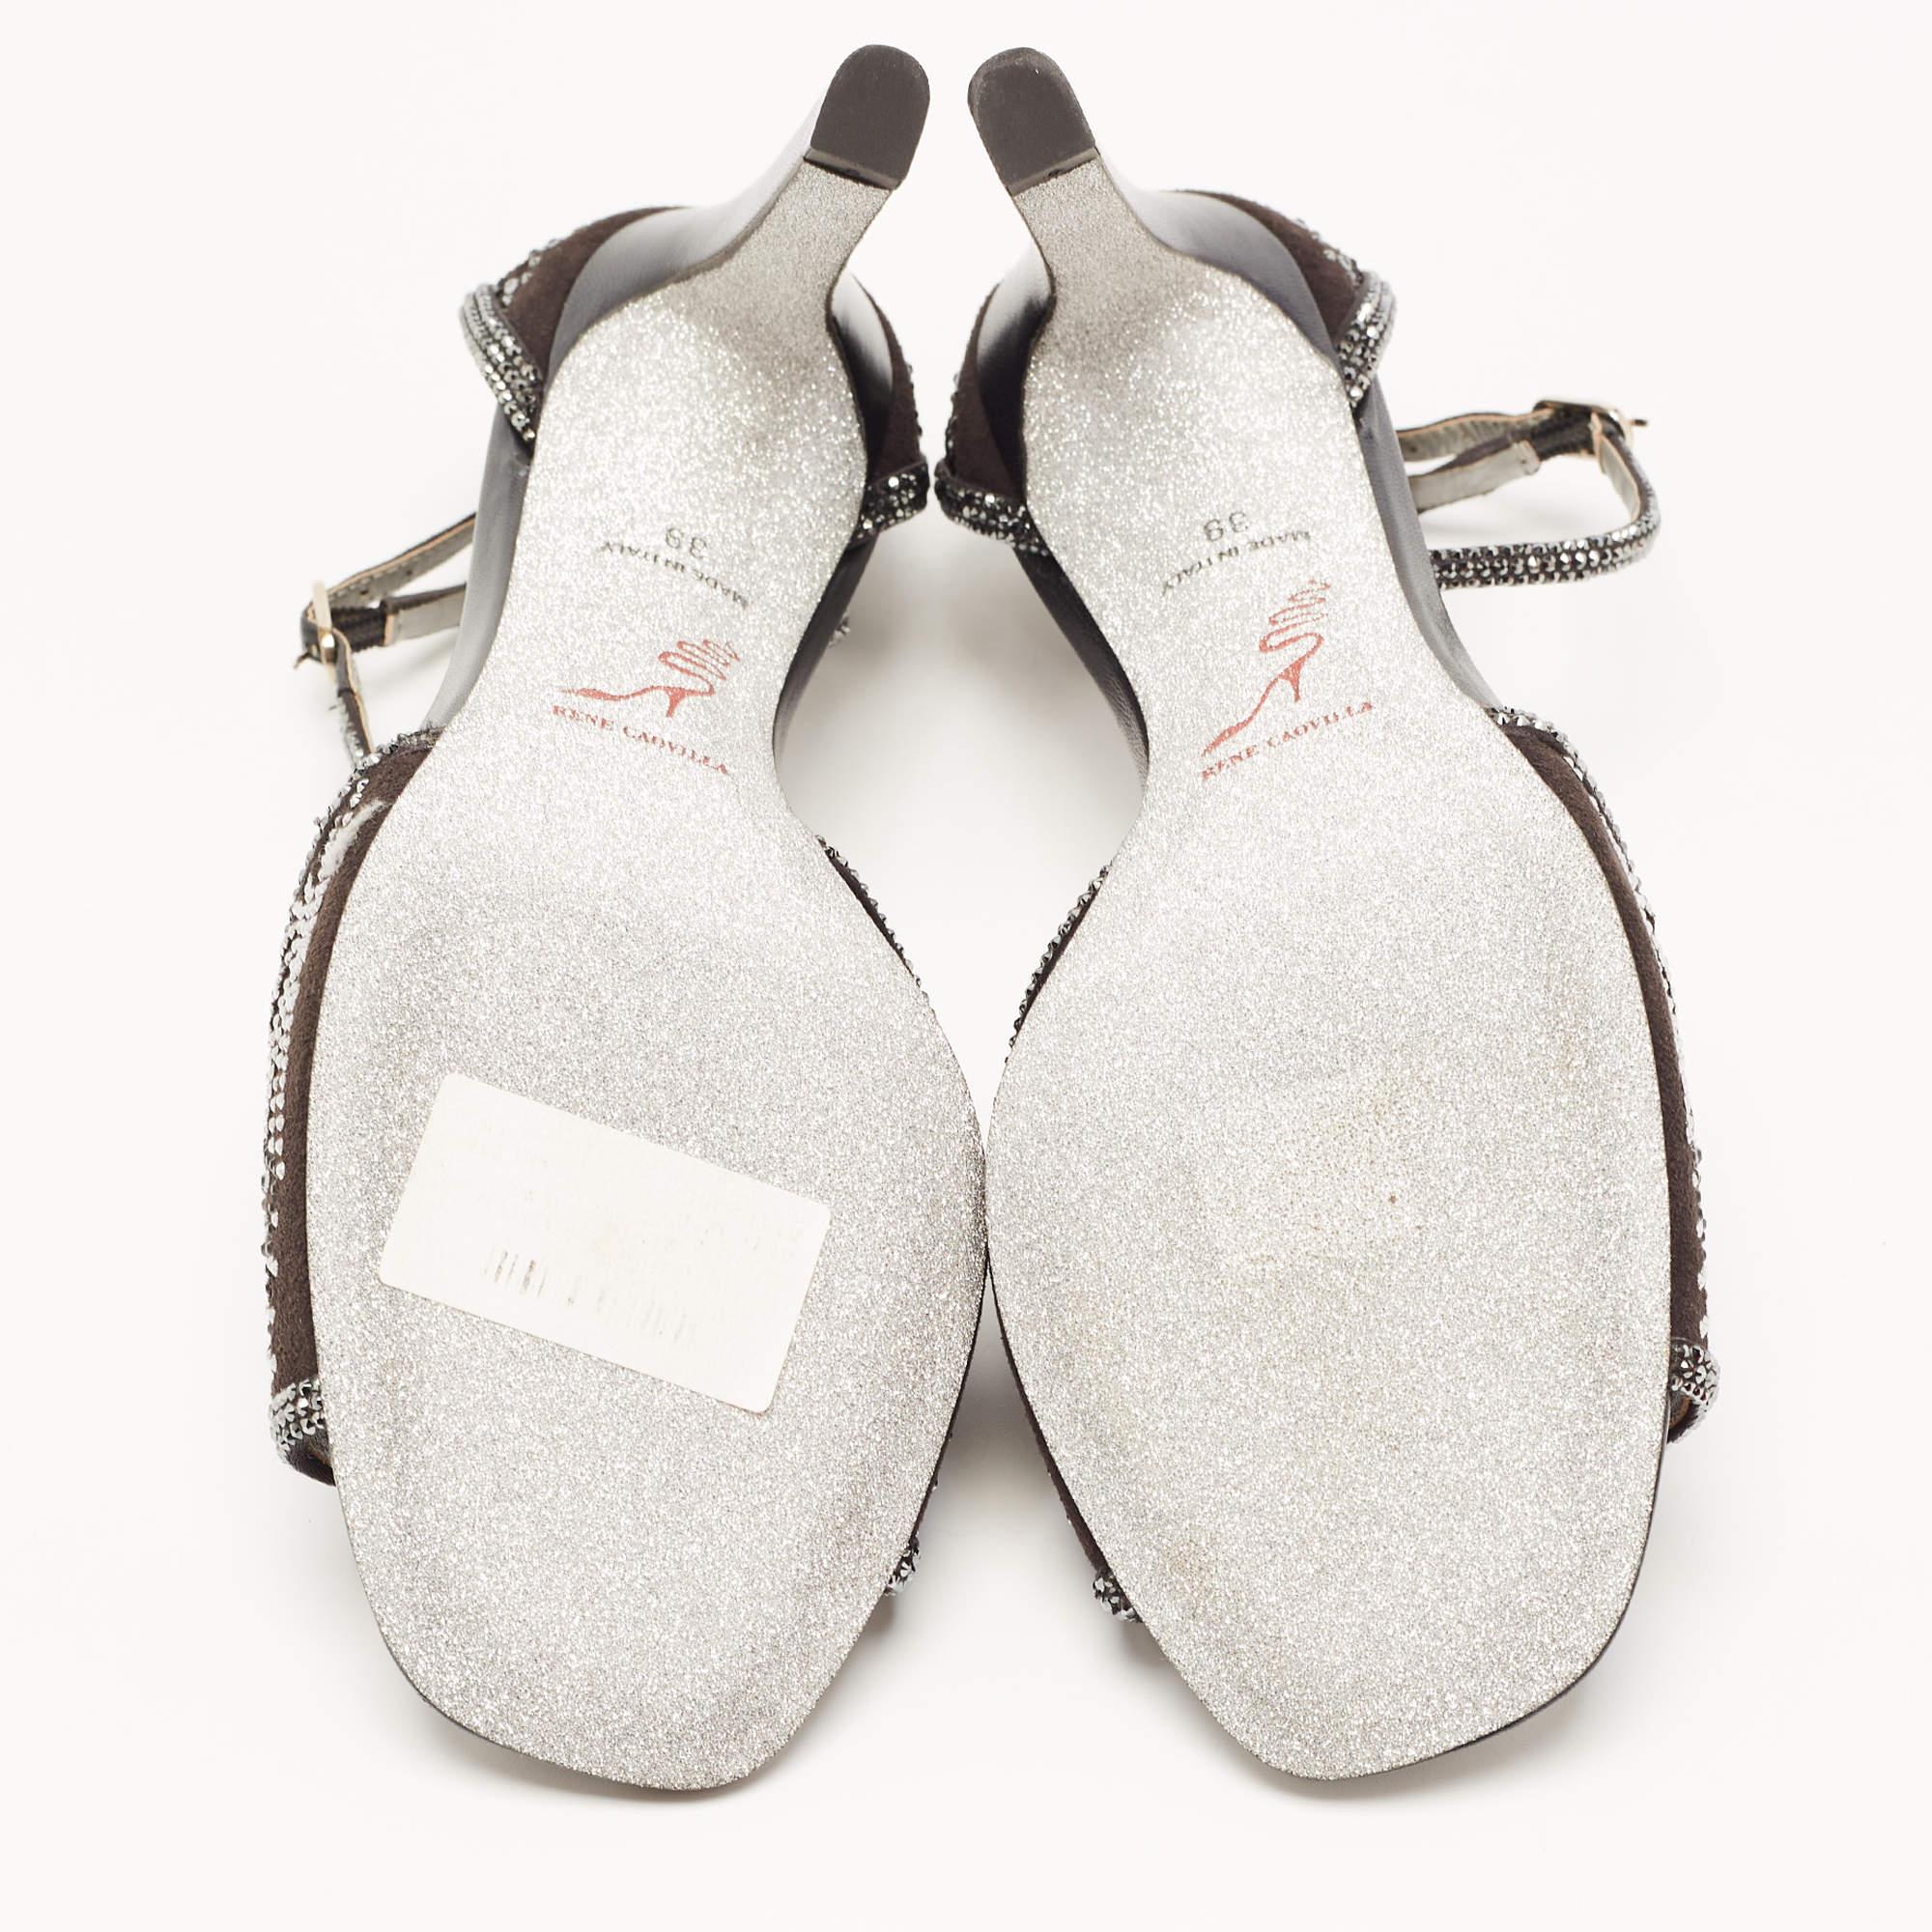 René Caovilla Black Suede Crystal Embellished Ankle Strap Sandals Size 39 1